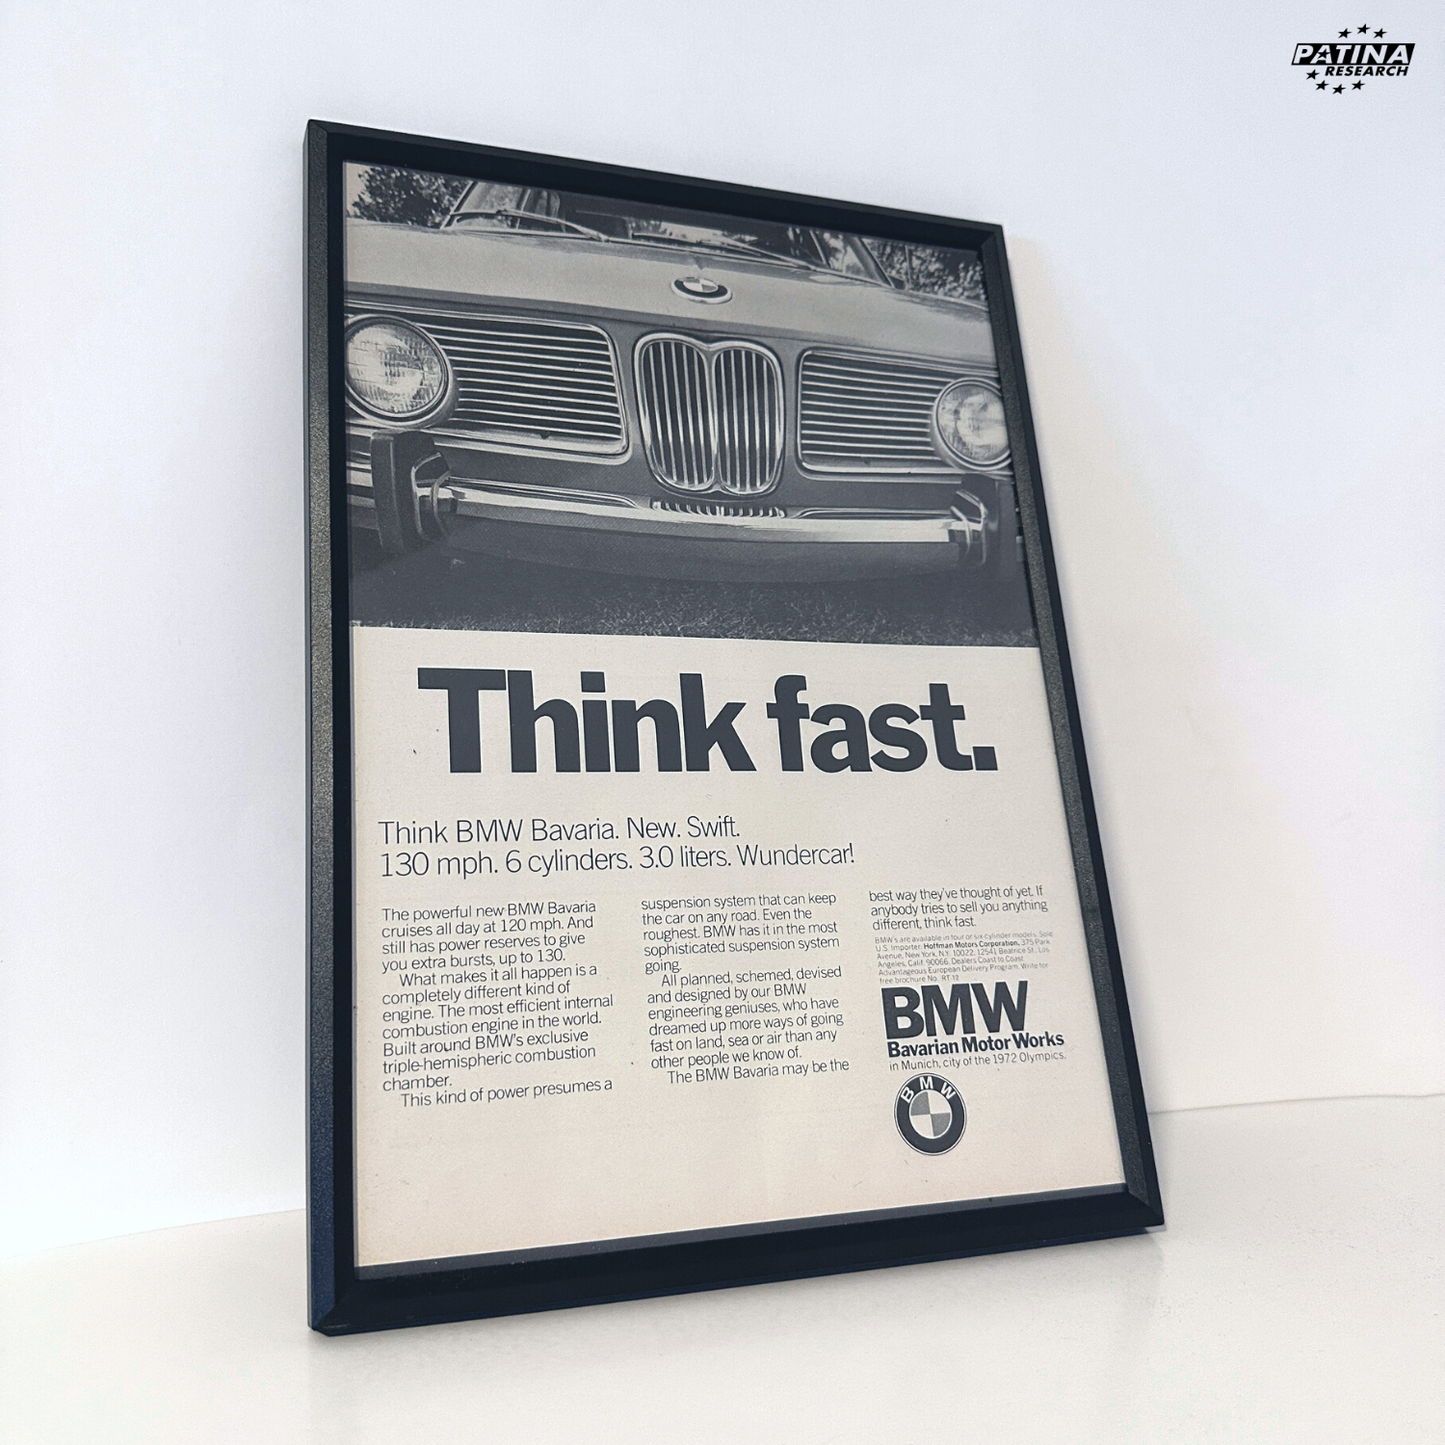 Think bmw Bavaria think fast framed ad